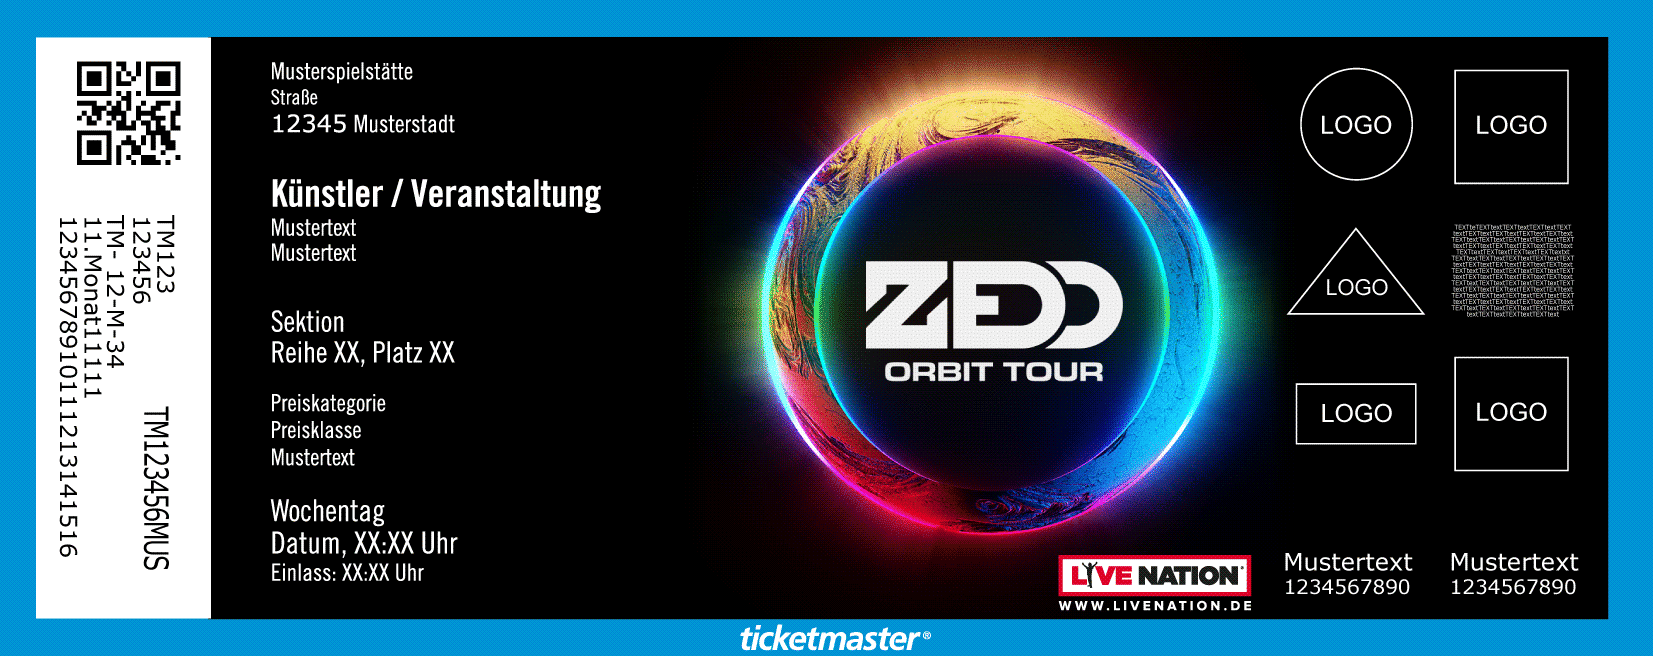 Zedd Tickets Deutschland